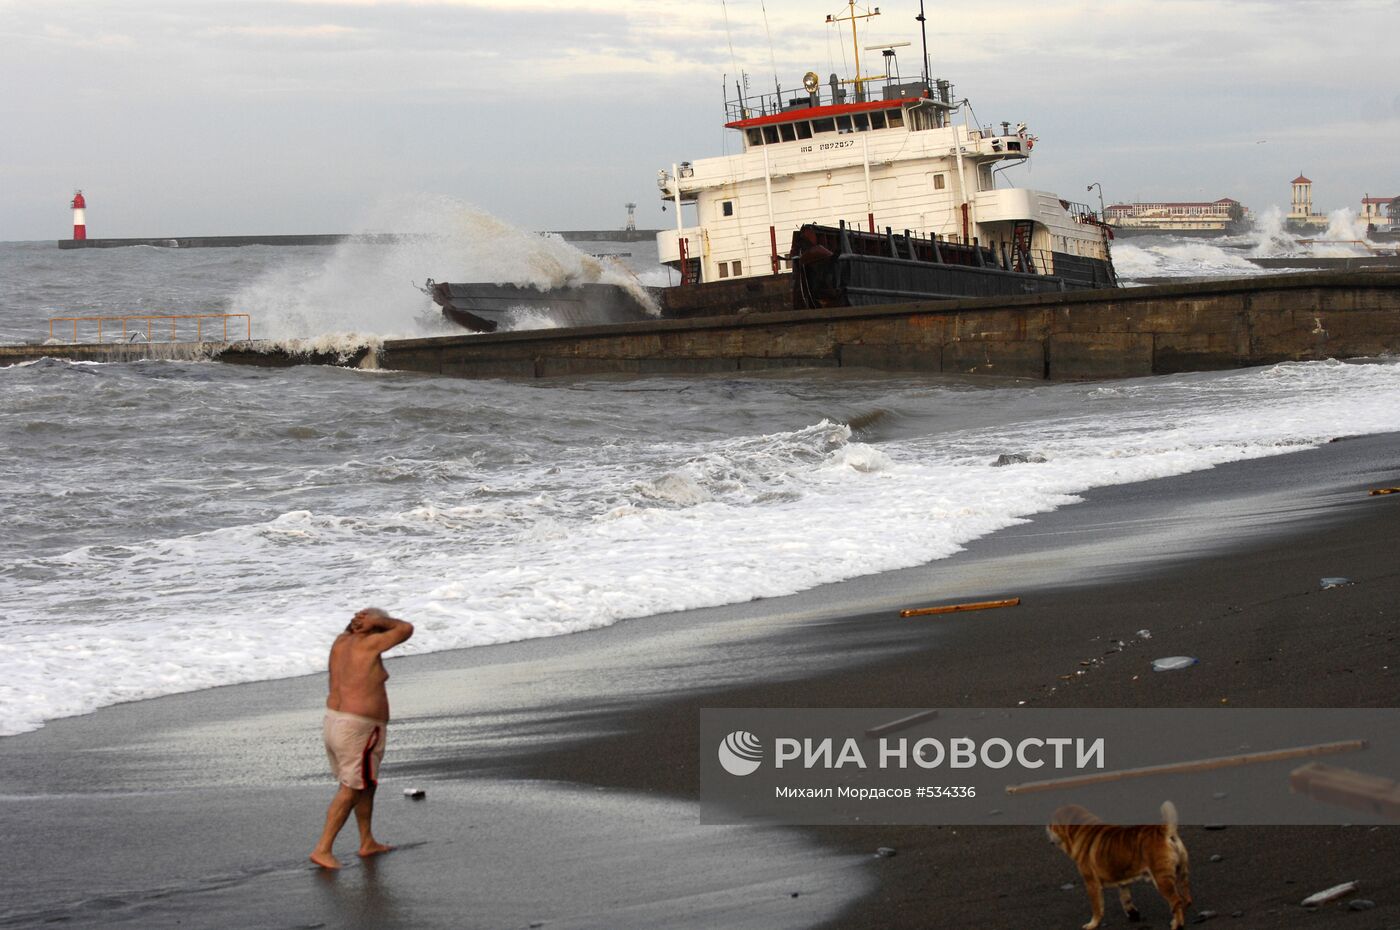 Молдавский сухогруз "Арас-1" выбросило на пляж в Сочи